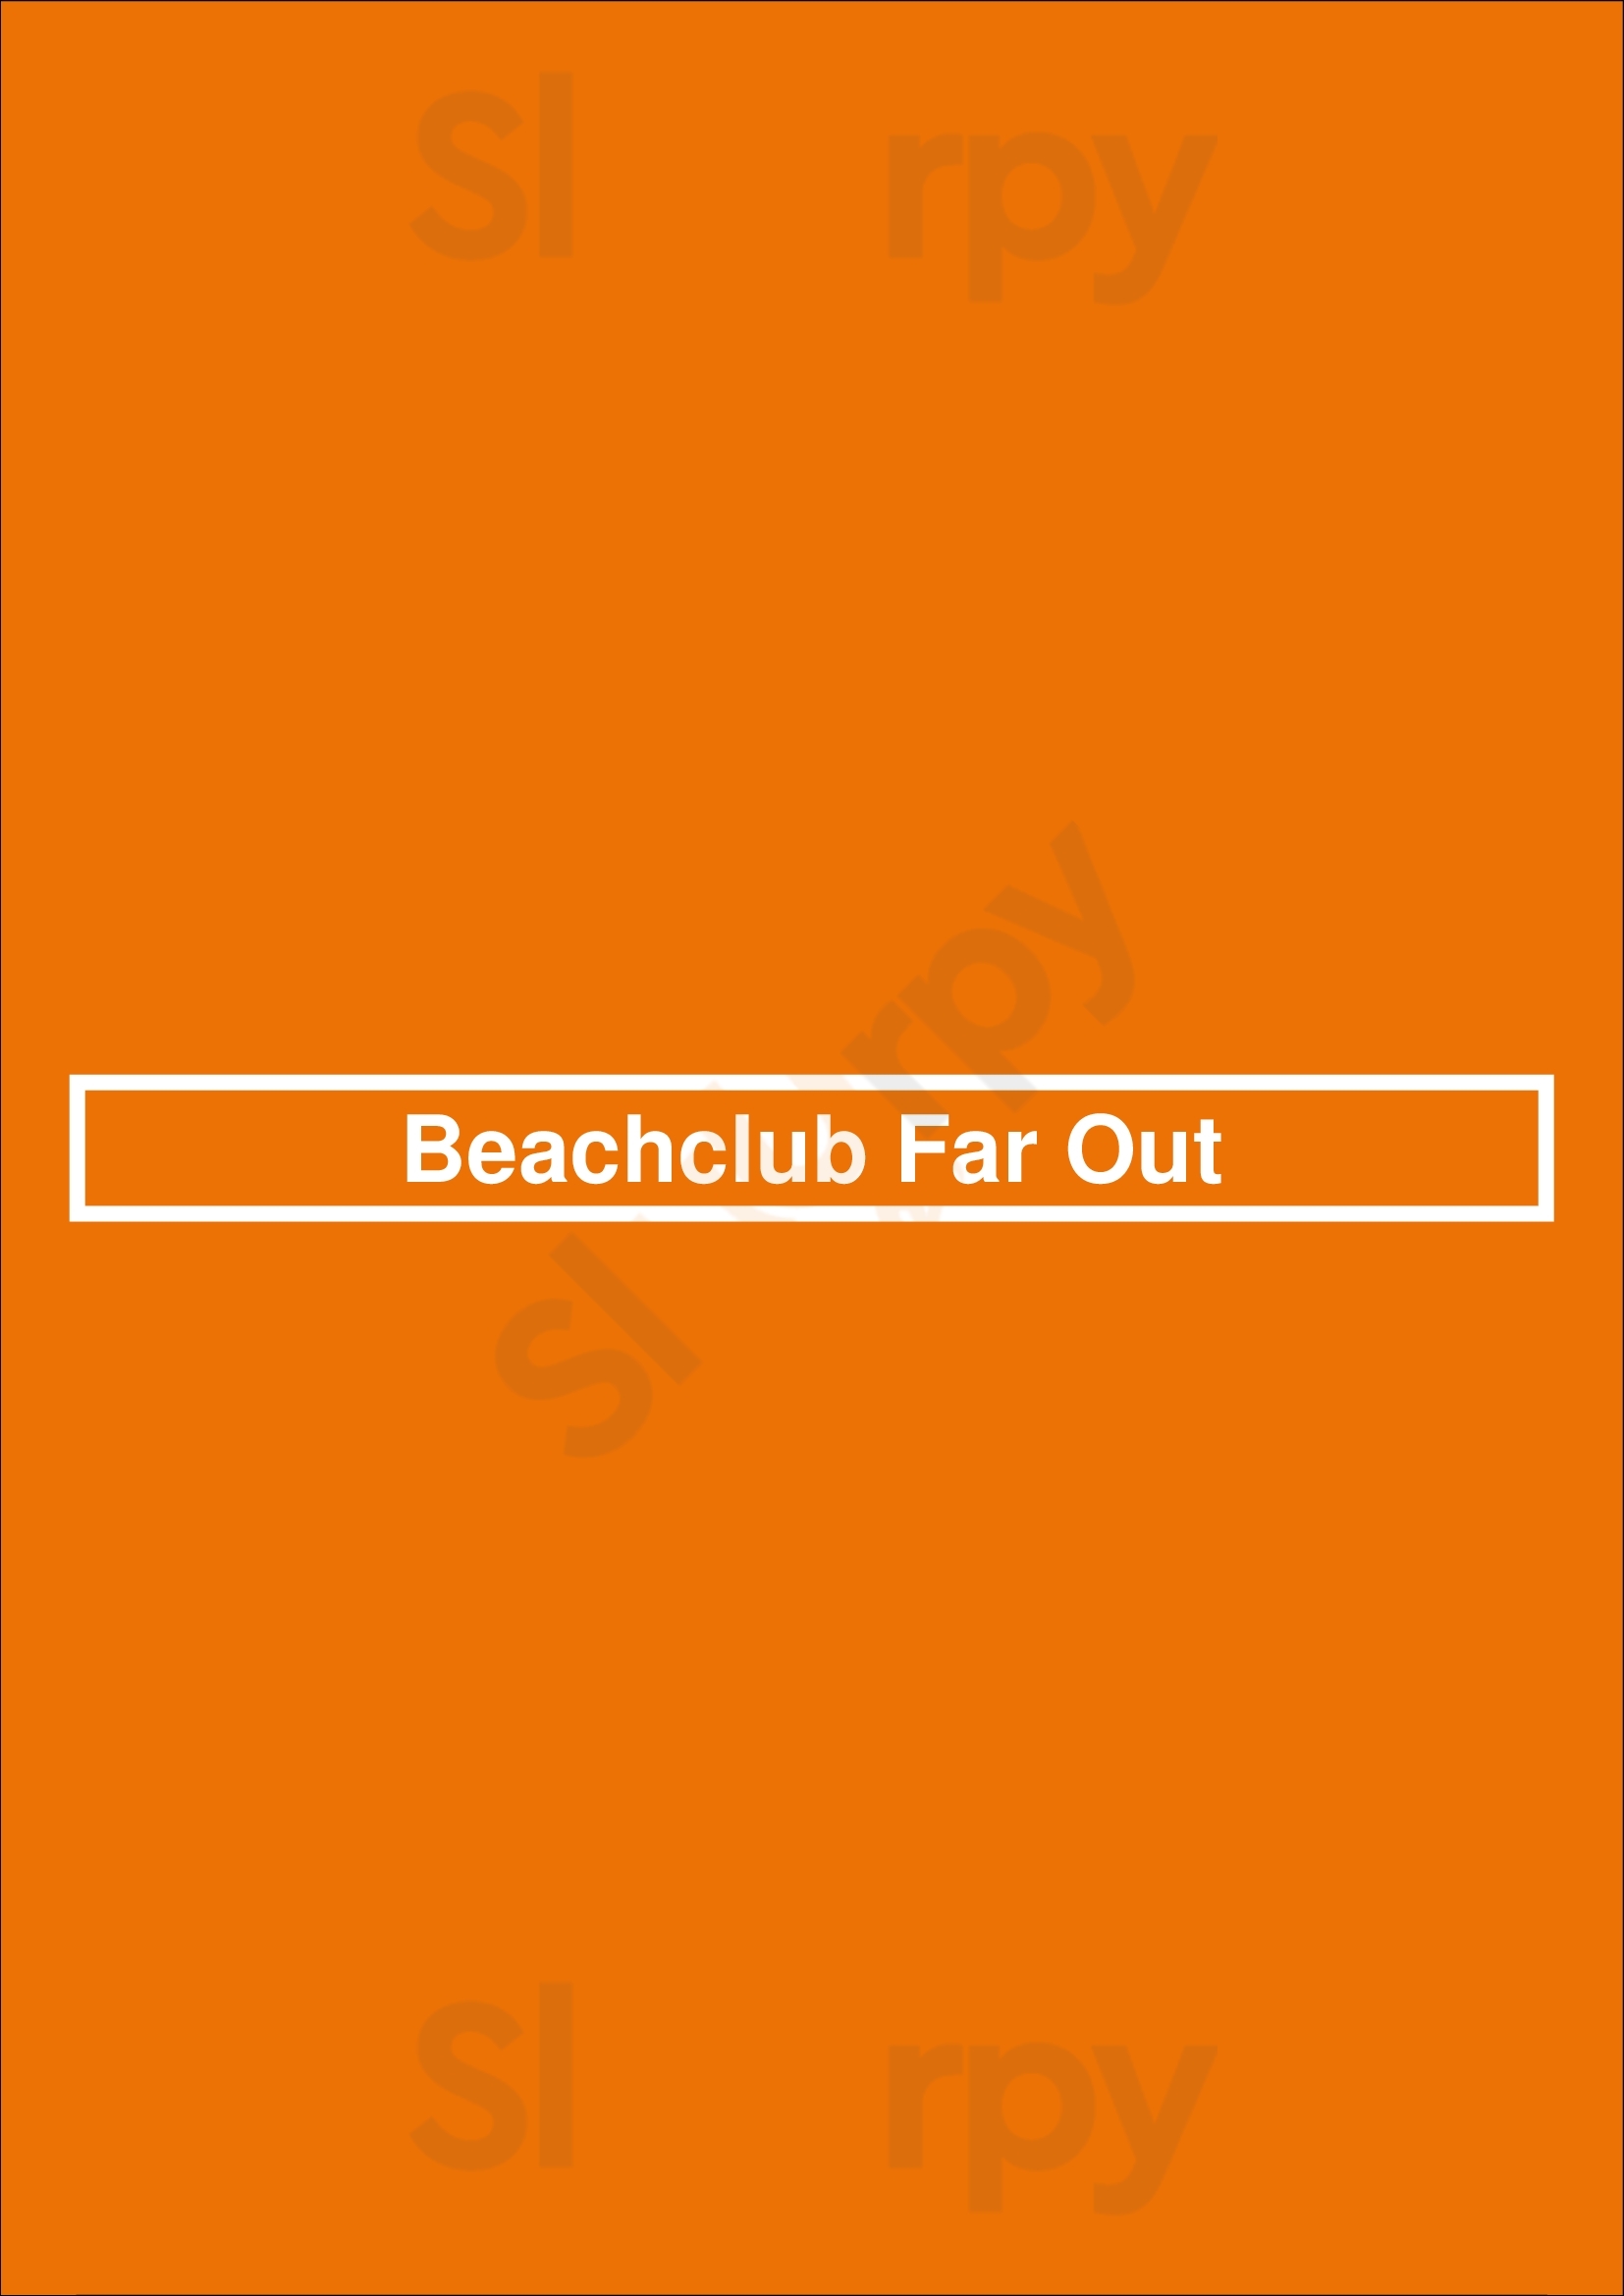 Beachclub Far Out Zandvoort Menu - 1